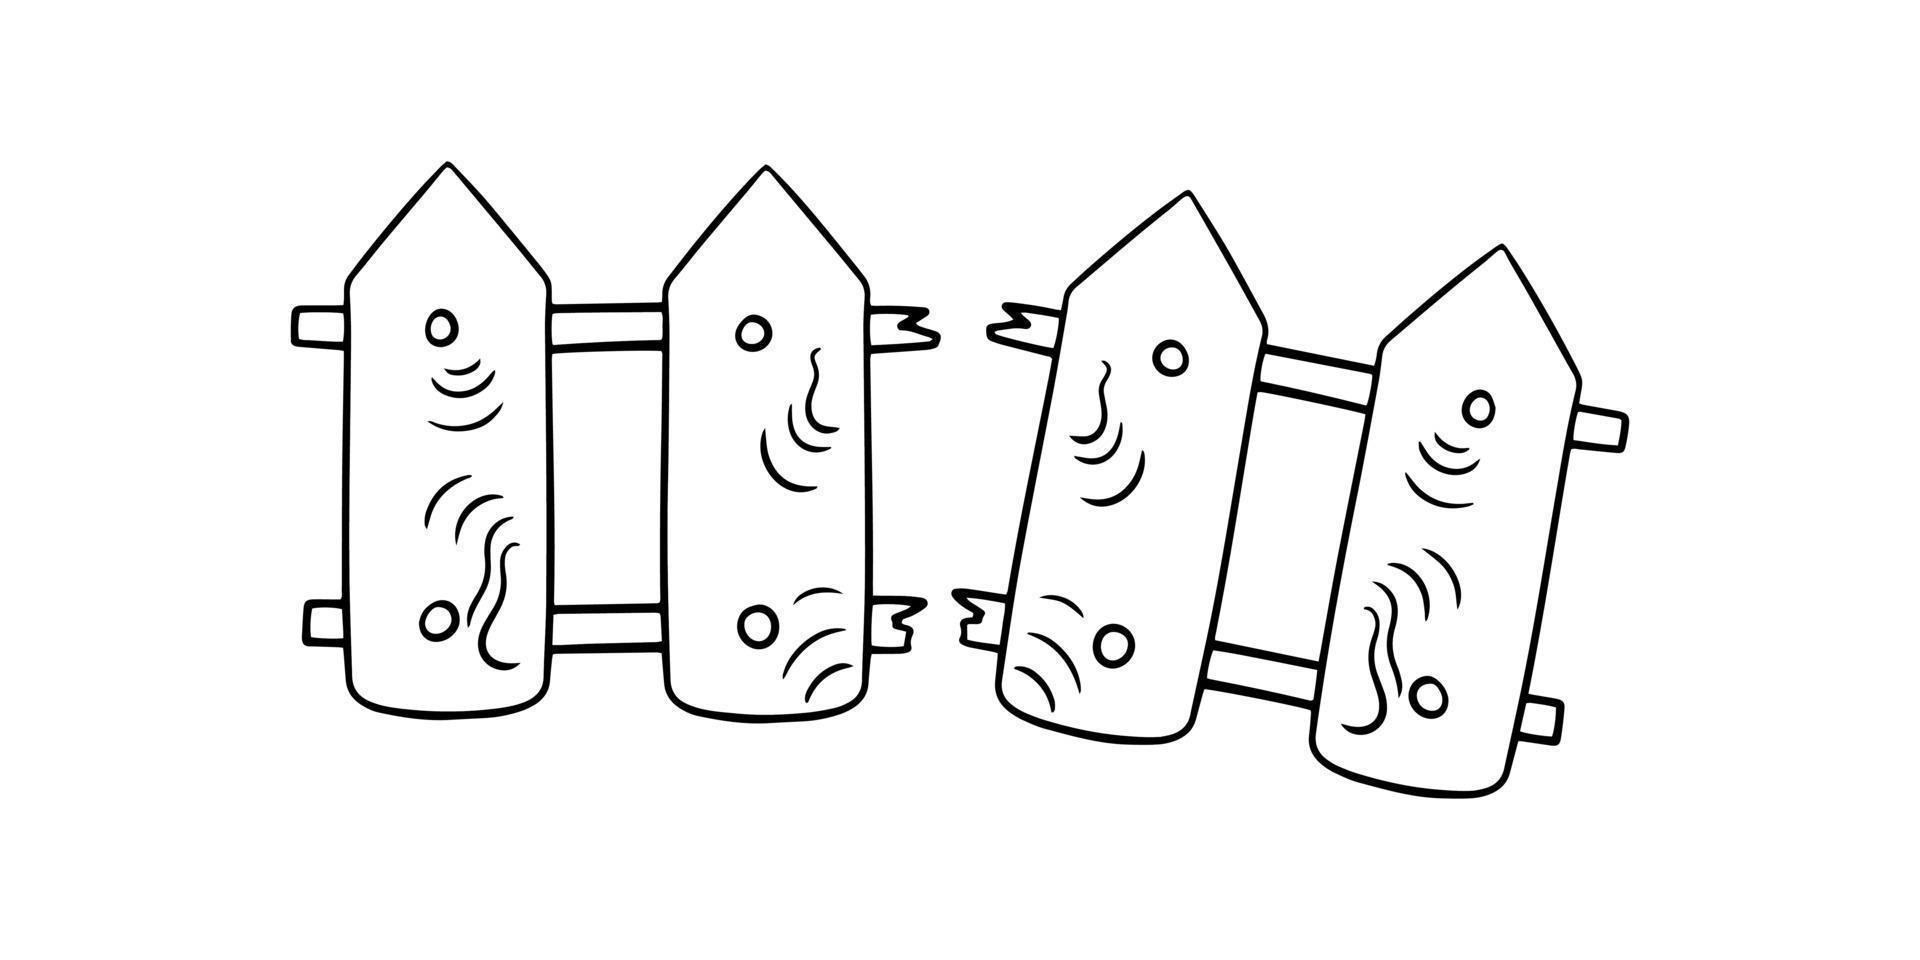 imagem monocromática, cerca baixa de madeira quebrada, ilustração vetorial em estilo cartoon sobre fundo branco vetor